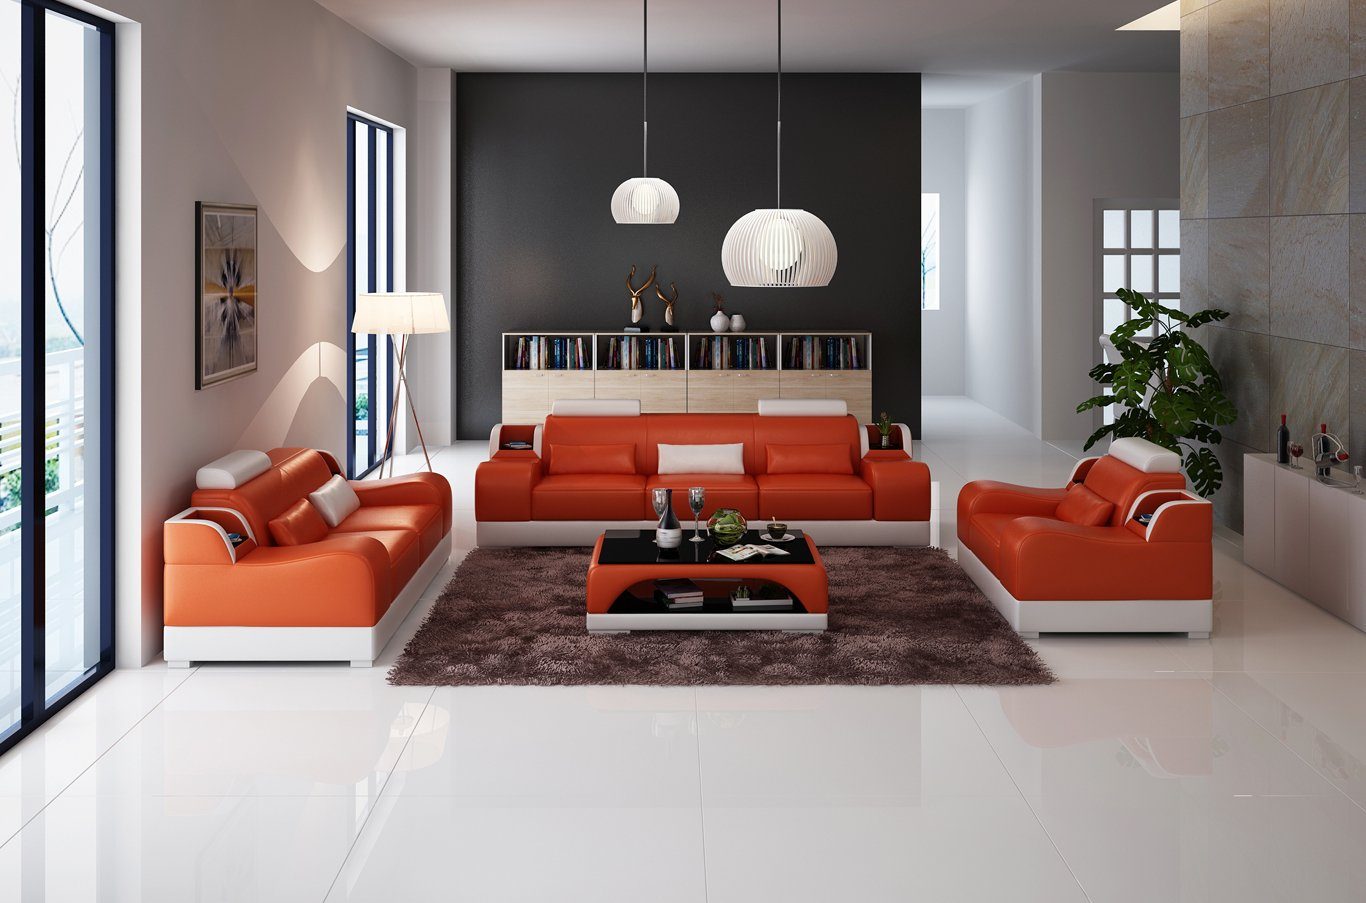 JVmoebel Sofa 3+2+2 Sitzer Set Design Sofa Polster Couchen Couch Modern Luxus Neu, Made in Europe Orange/Weiß